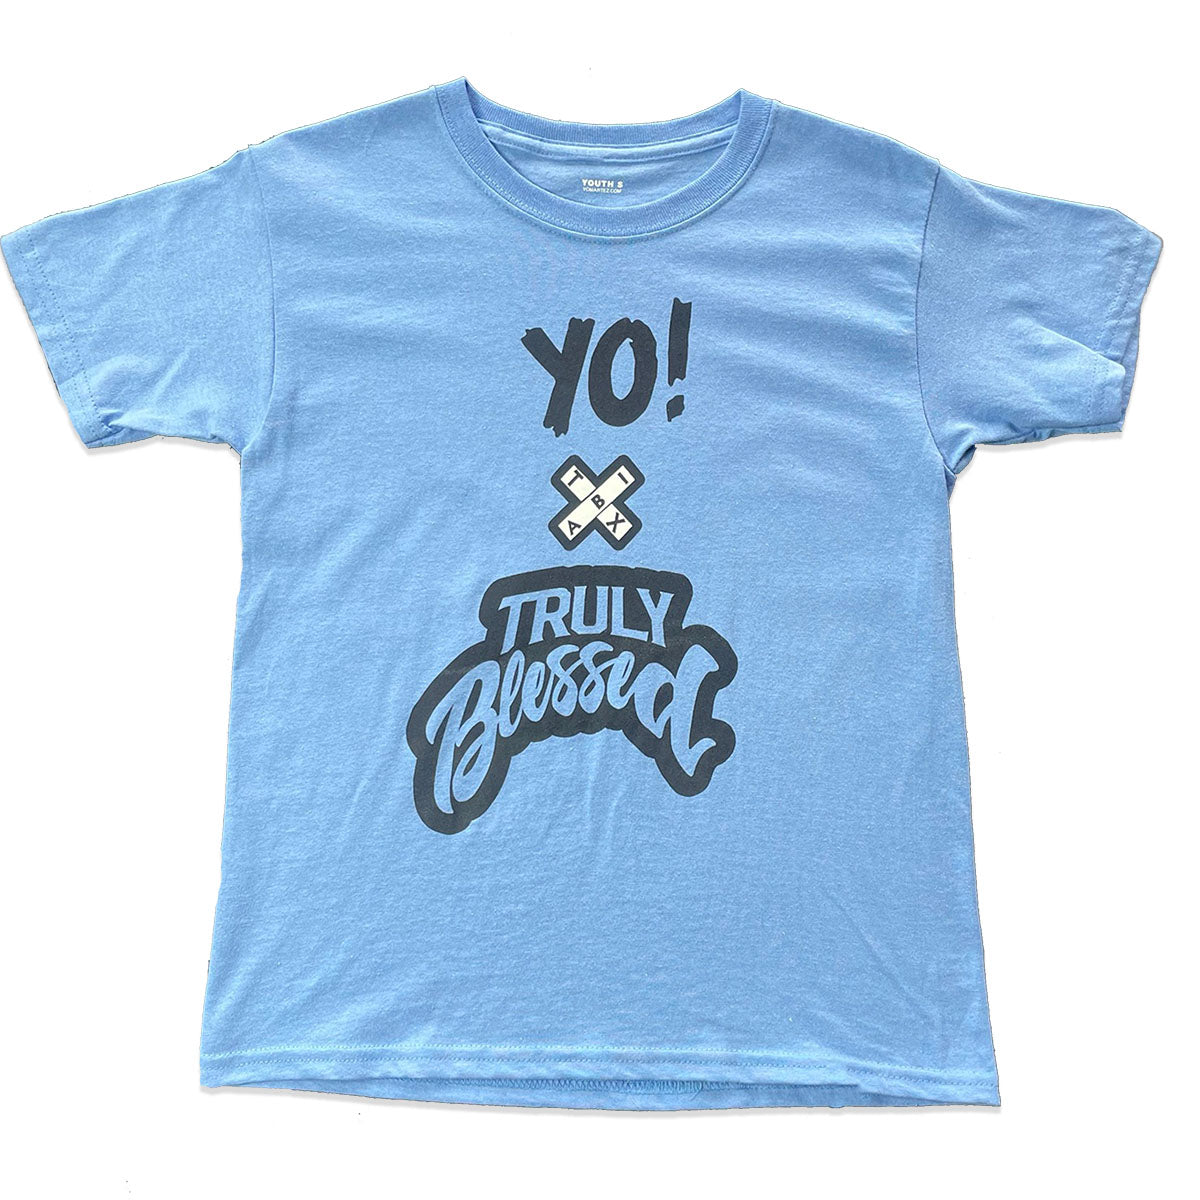 Believe in Yo! City T-shirt